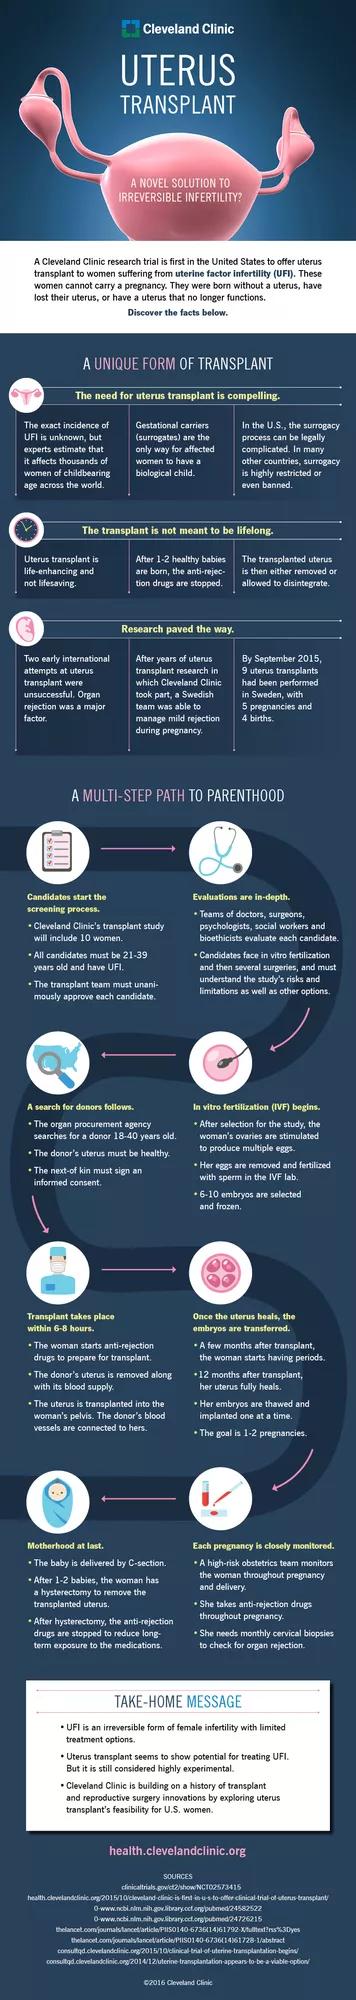 16-CCC-310 Updated Uterus Transplant Infographic